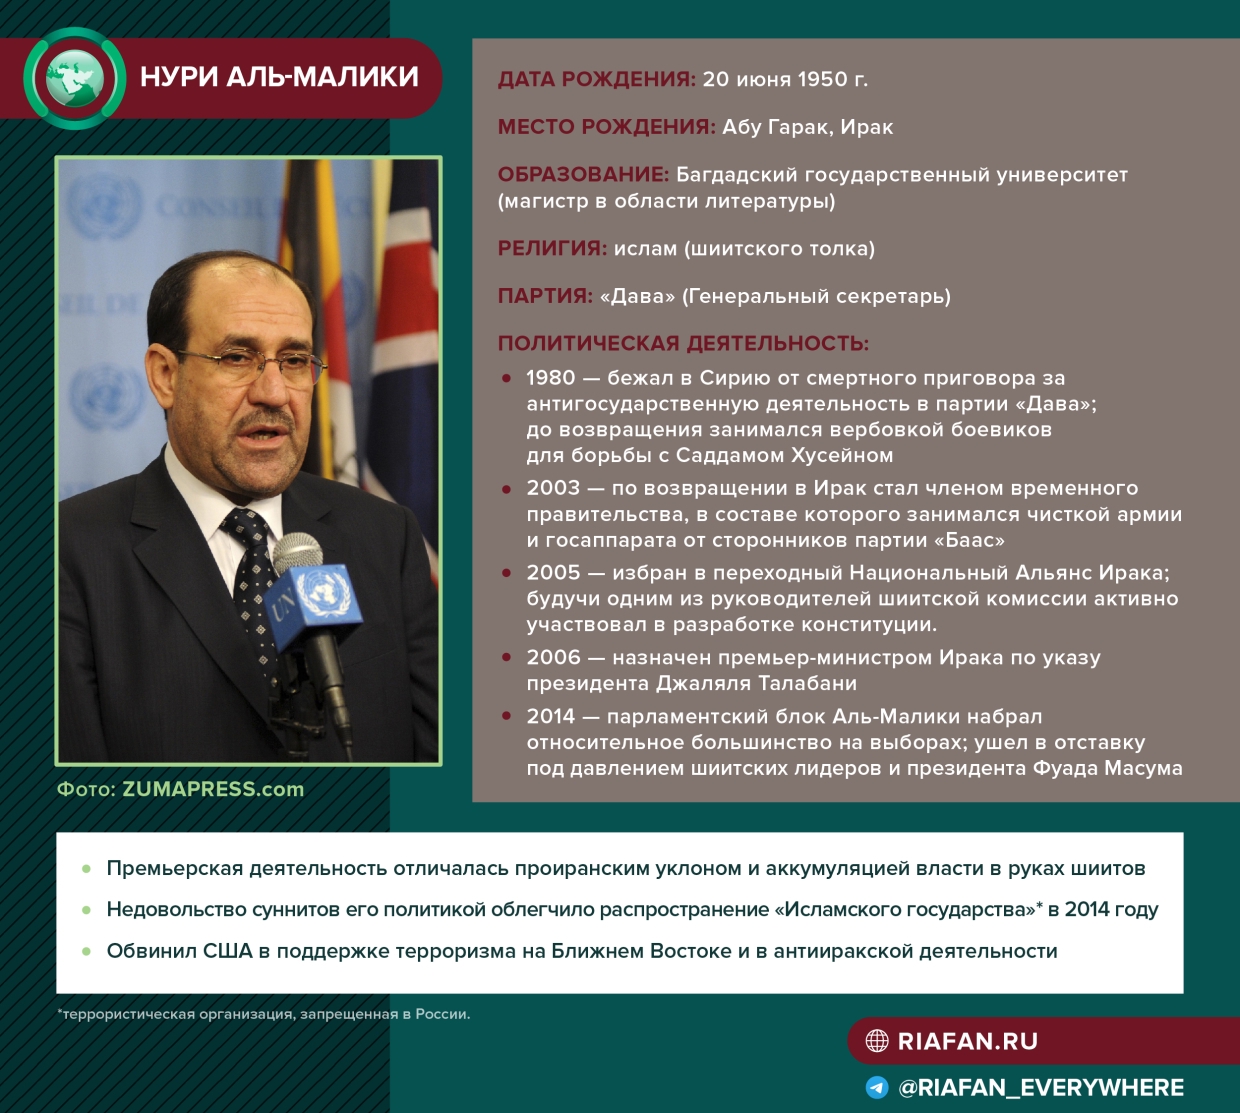 Почему ушедший с позором аль-Малики снова может стать премьер-министром Ирака